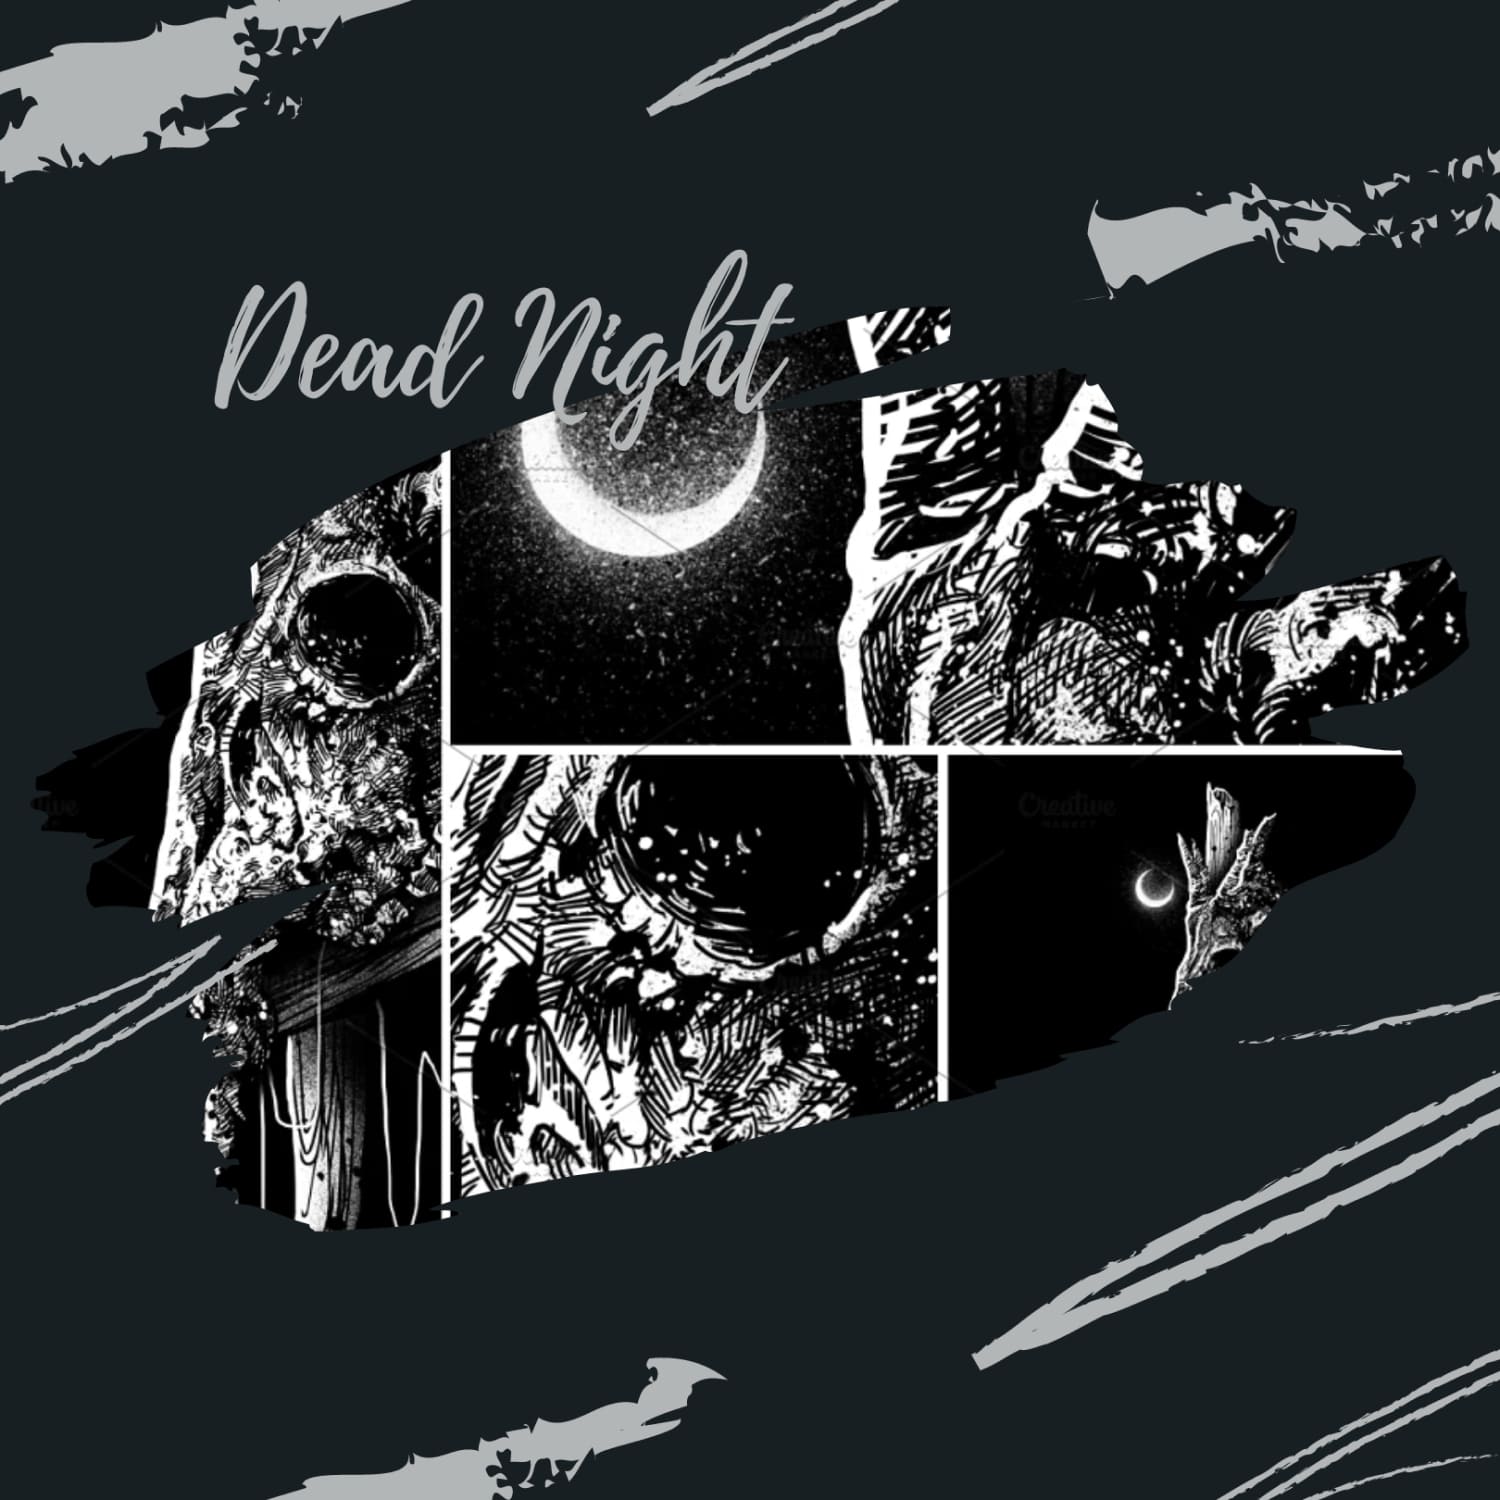 Dead Night, picture 1500x1500.